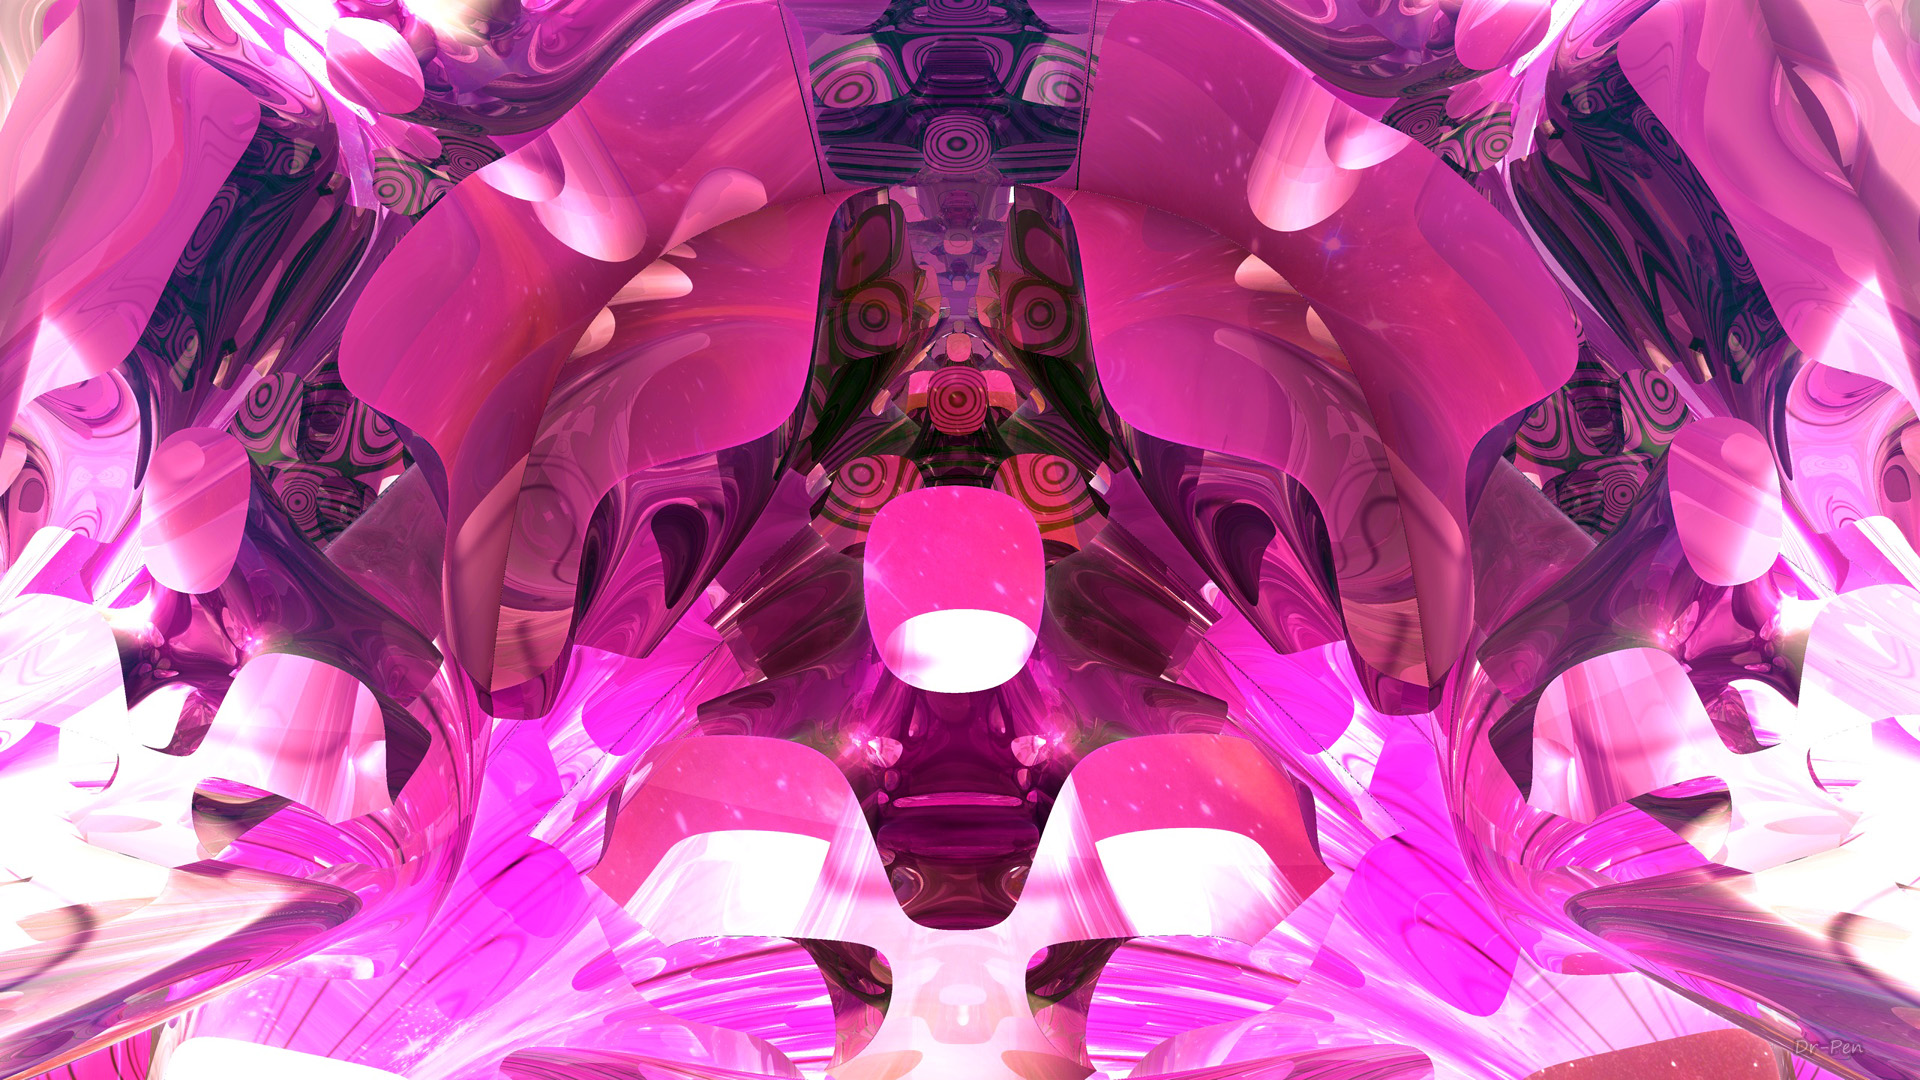 Hot Pink Architecture - 3d Fractal Art by Dr-Pen